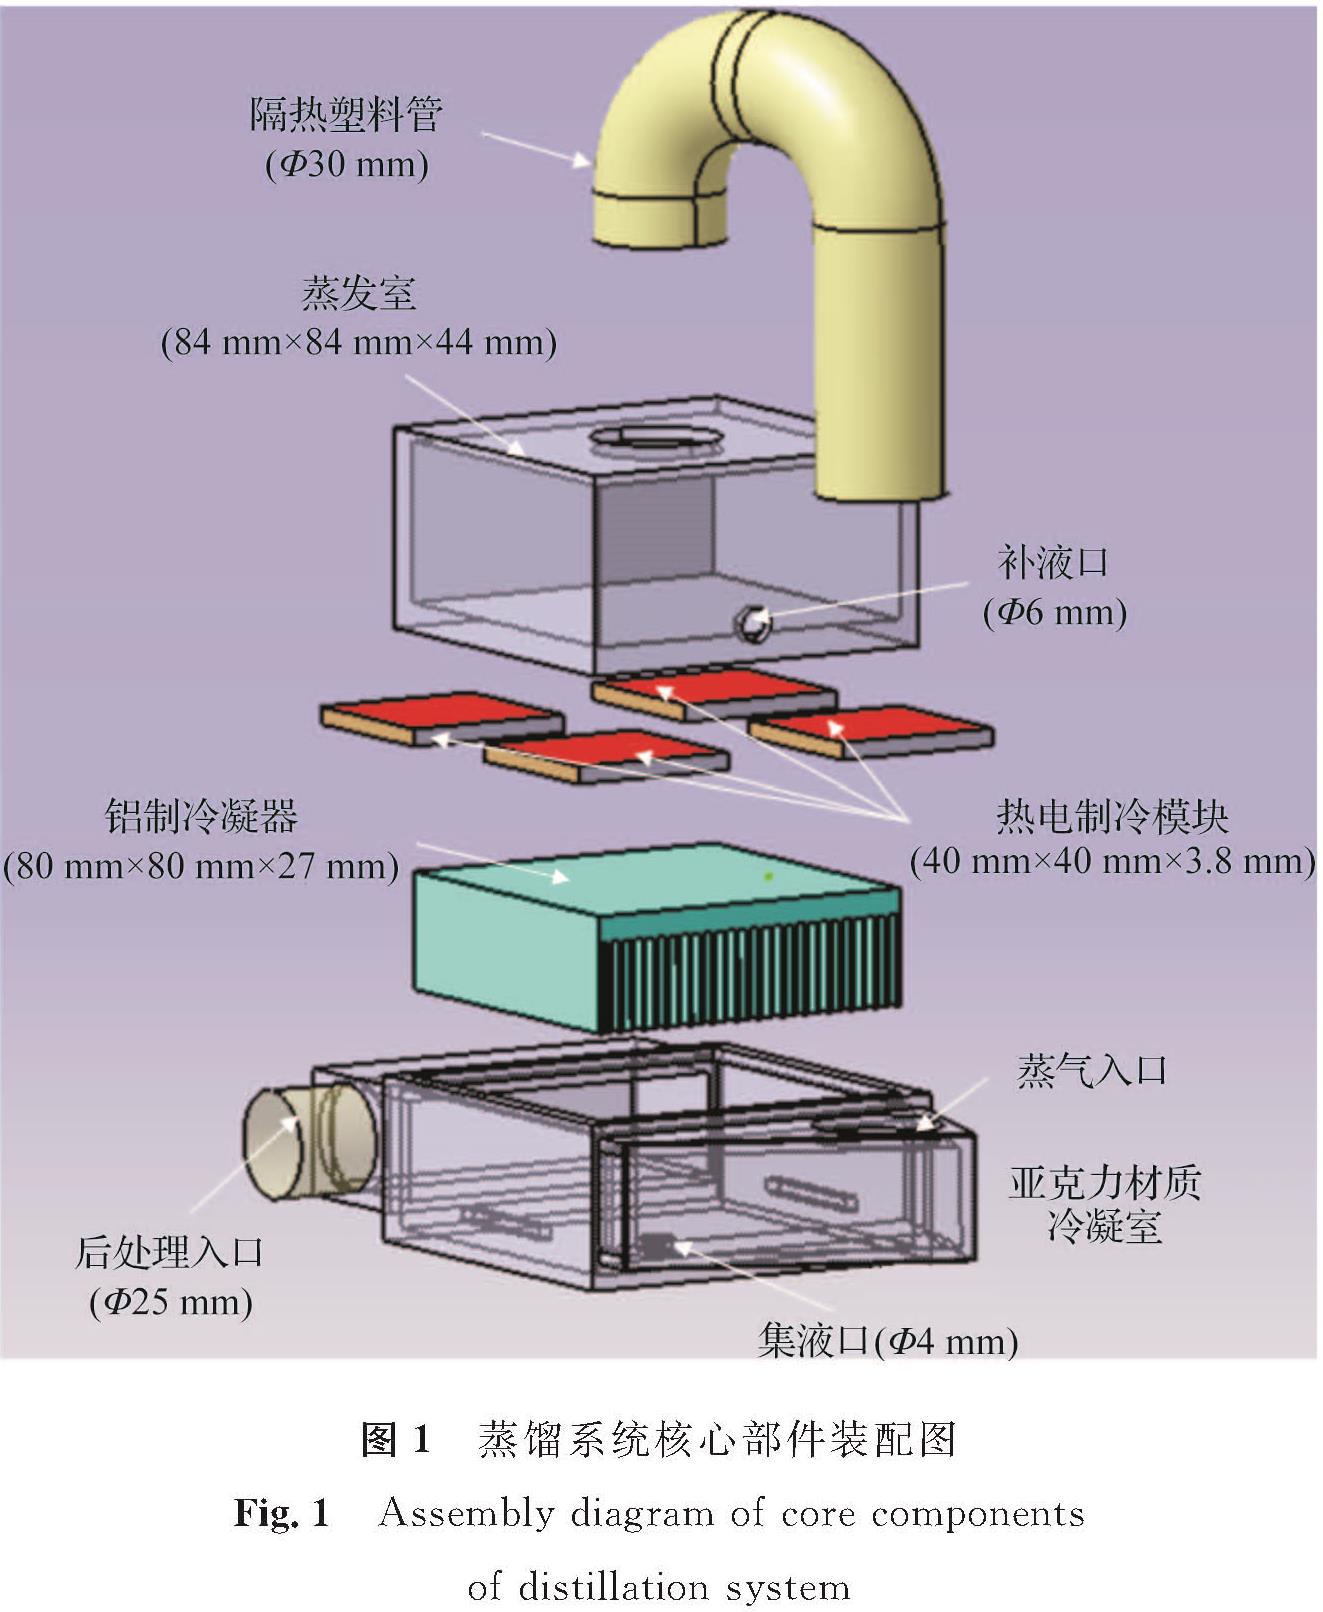 图1 蒸馏系统核心部件装配图<br/>Fig.1 Assembly diagram of core components of distillation system